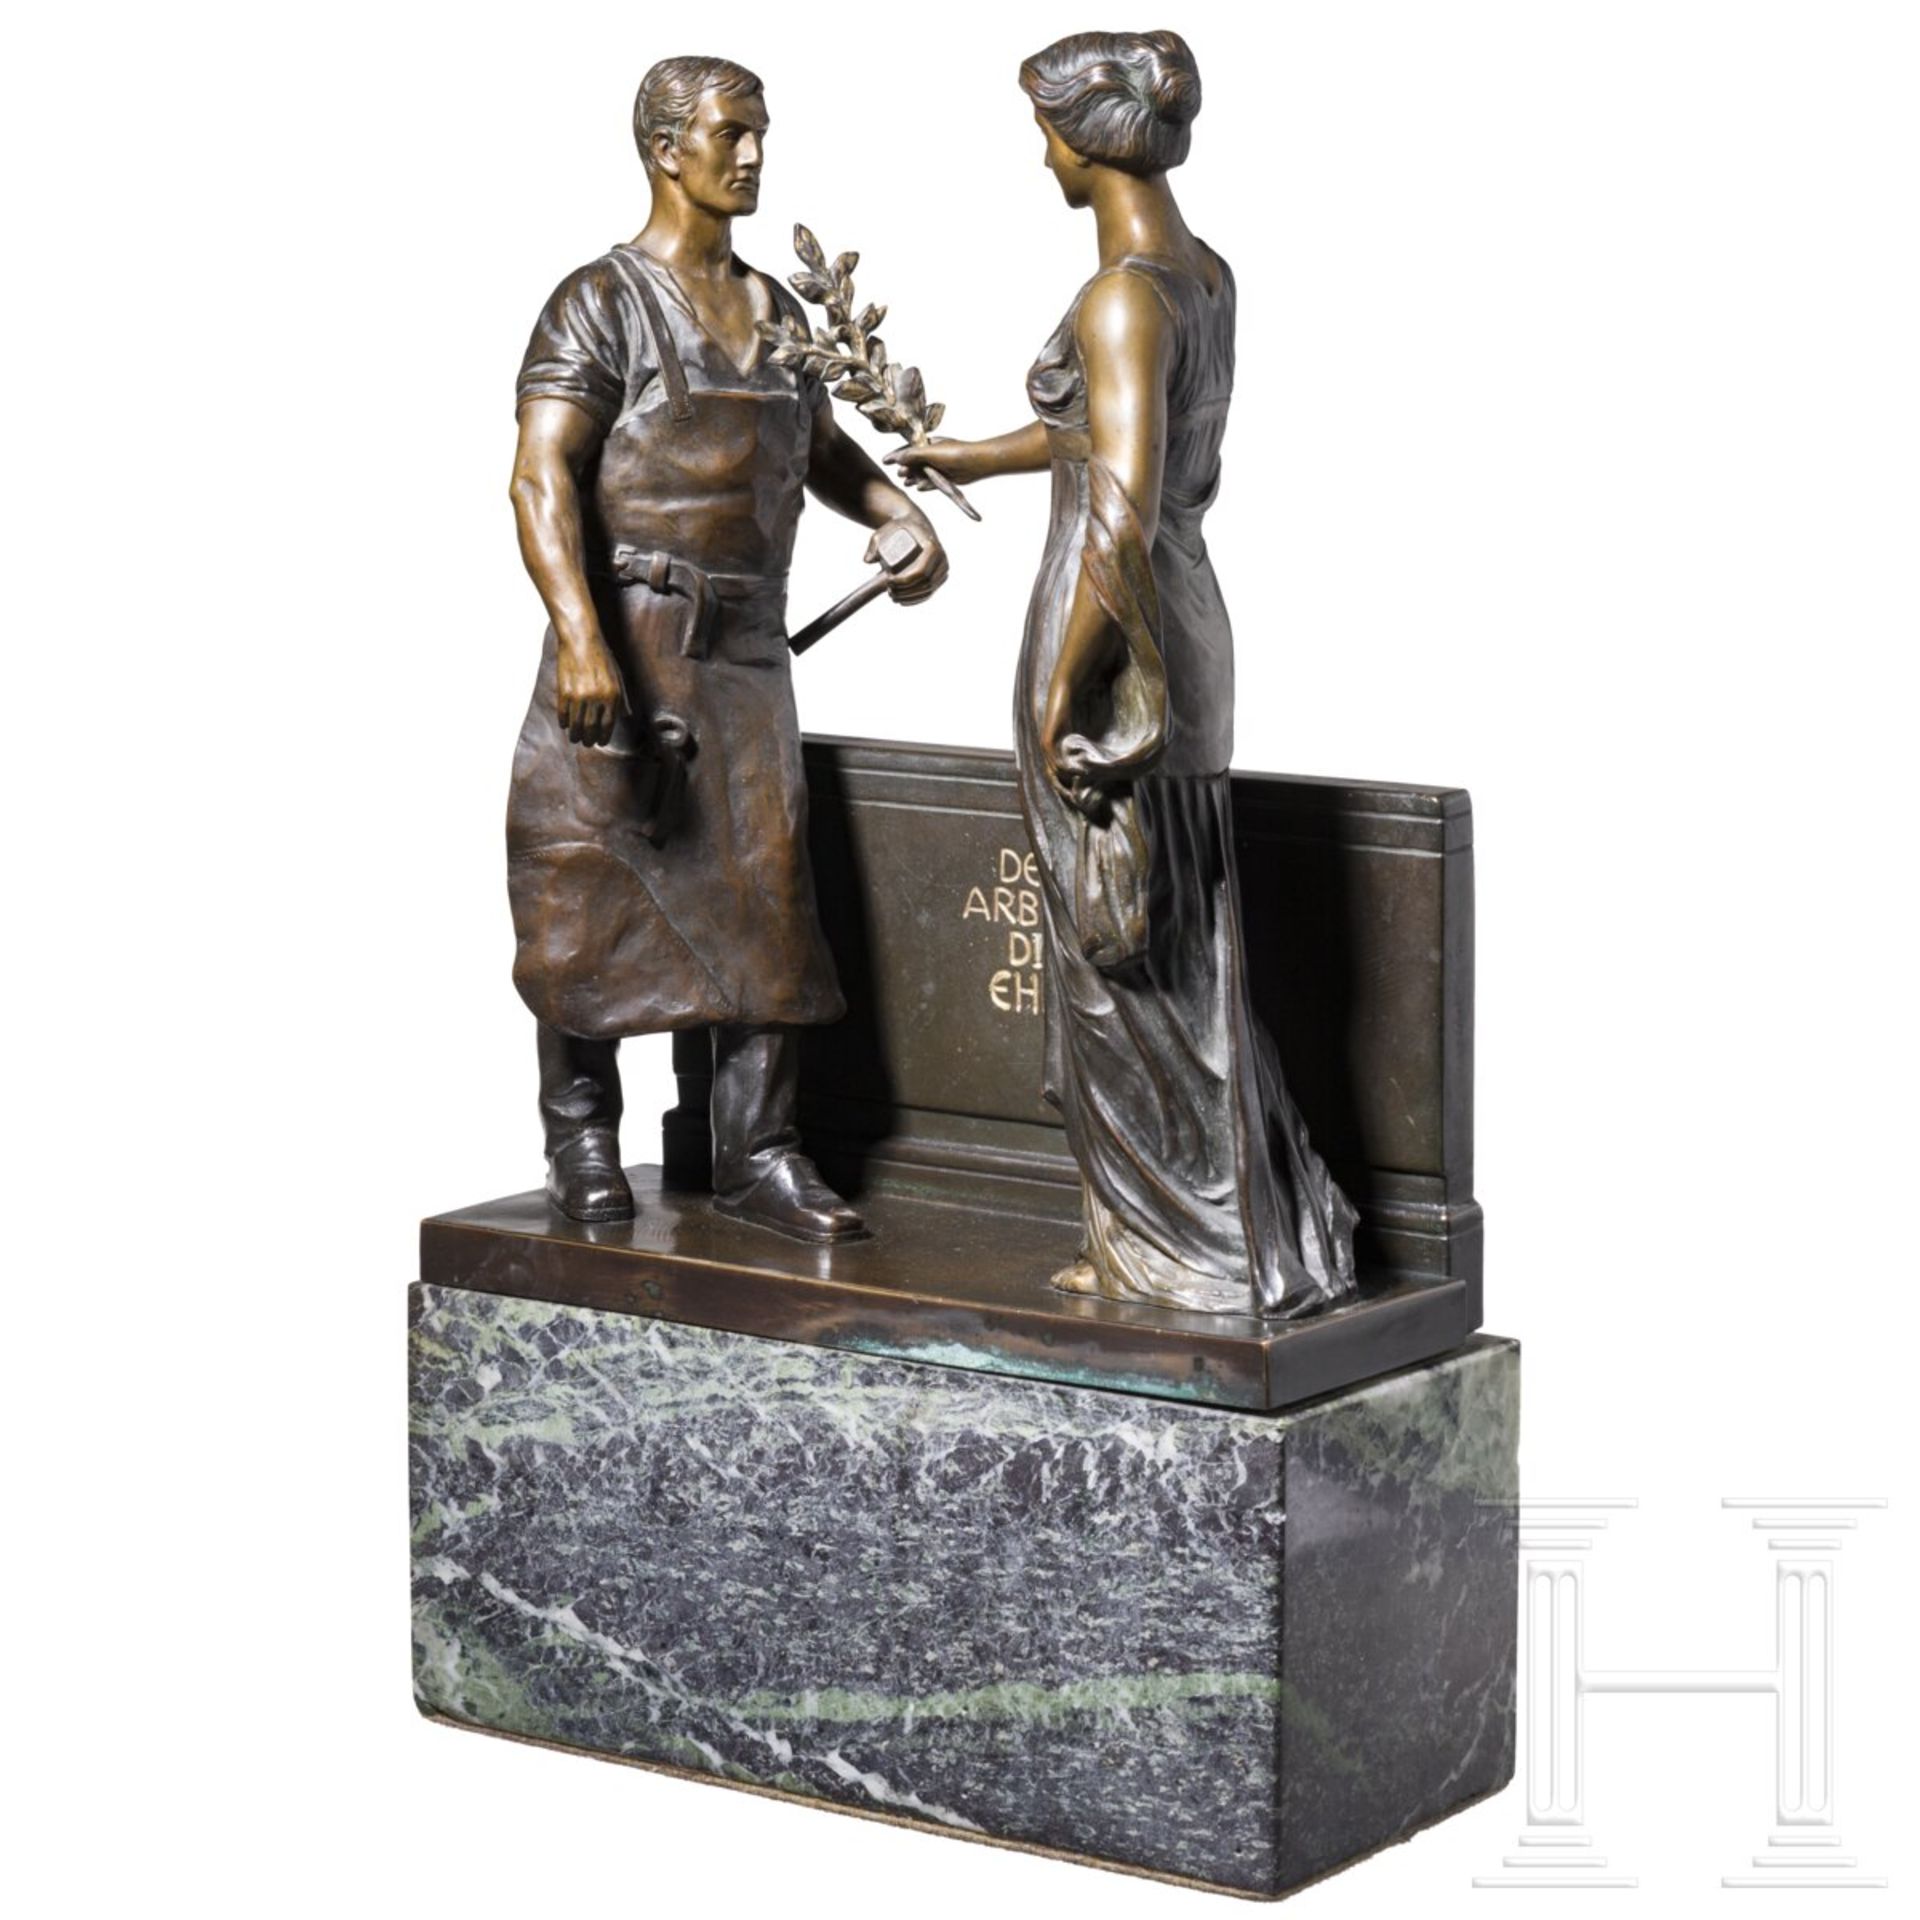 Bronzeplastik "Der Arbeit die Ehre" - Image 2 of 4